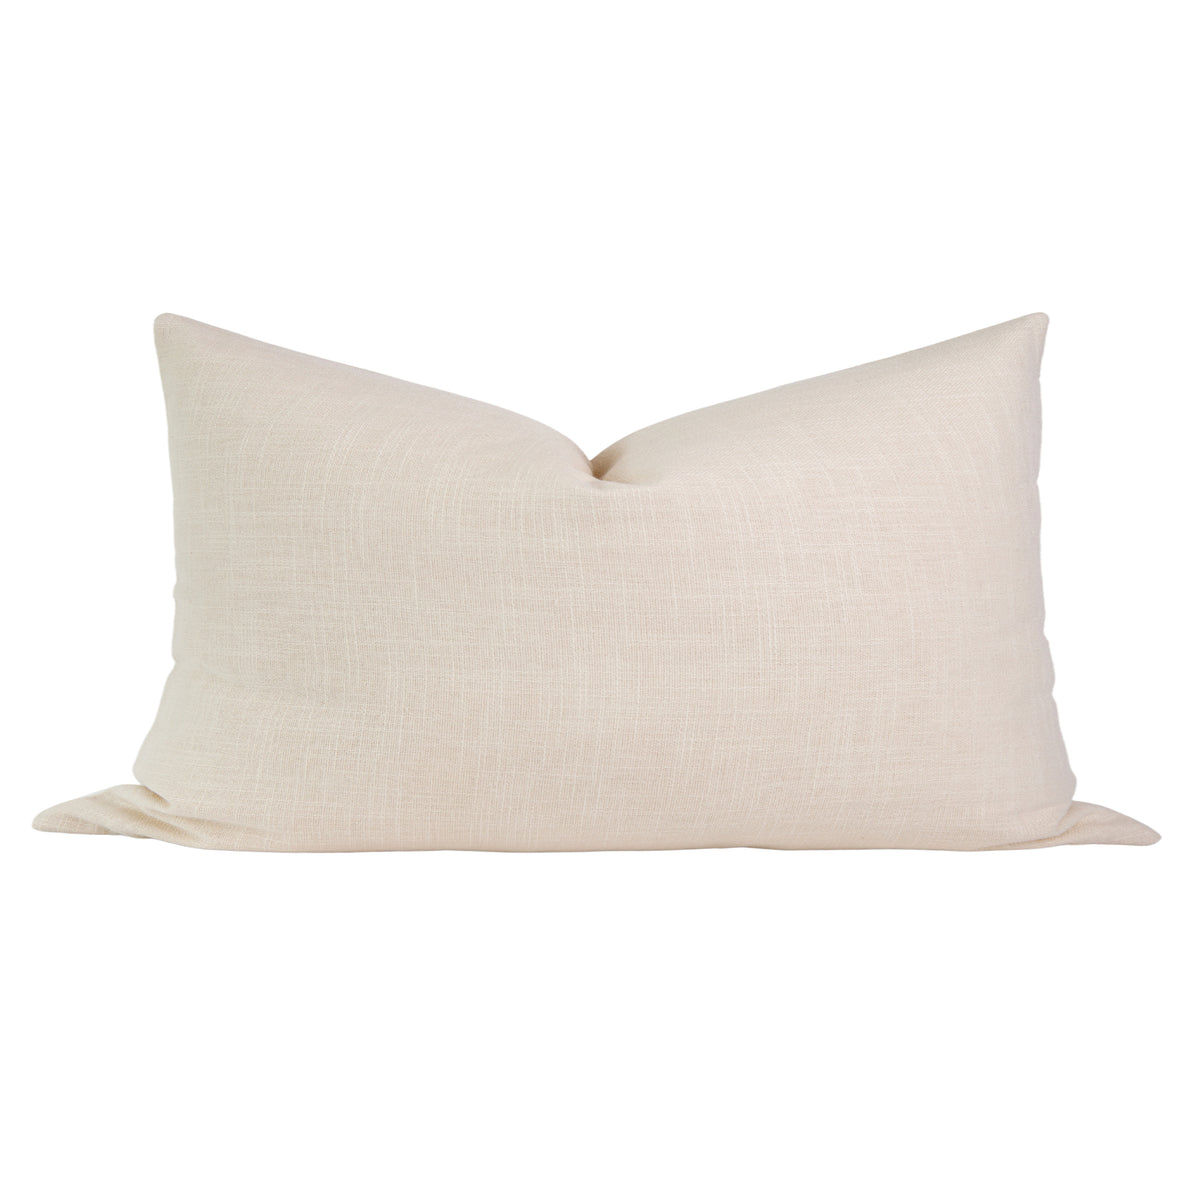 Cream Linen Pillow Cover